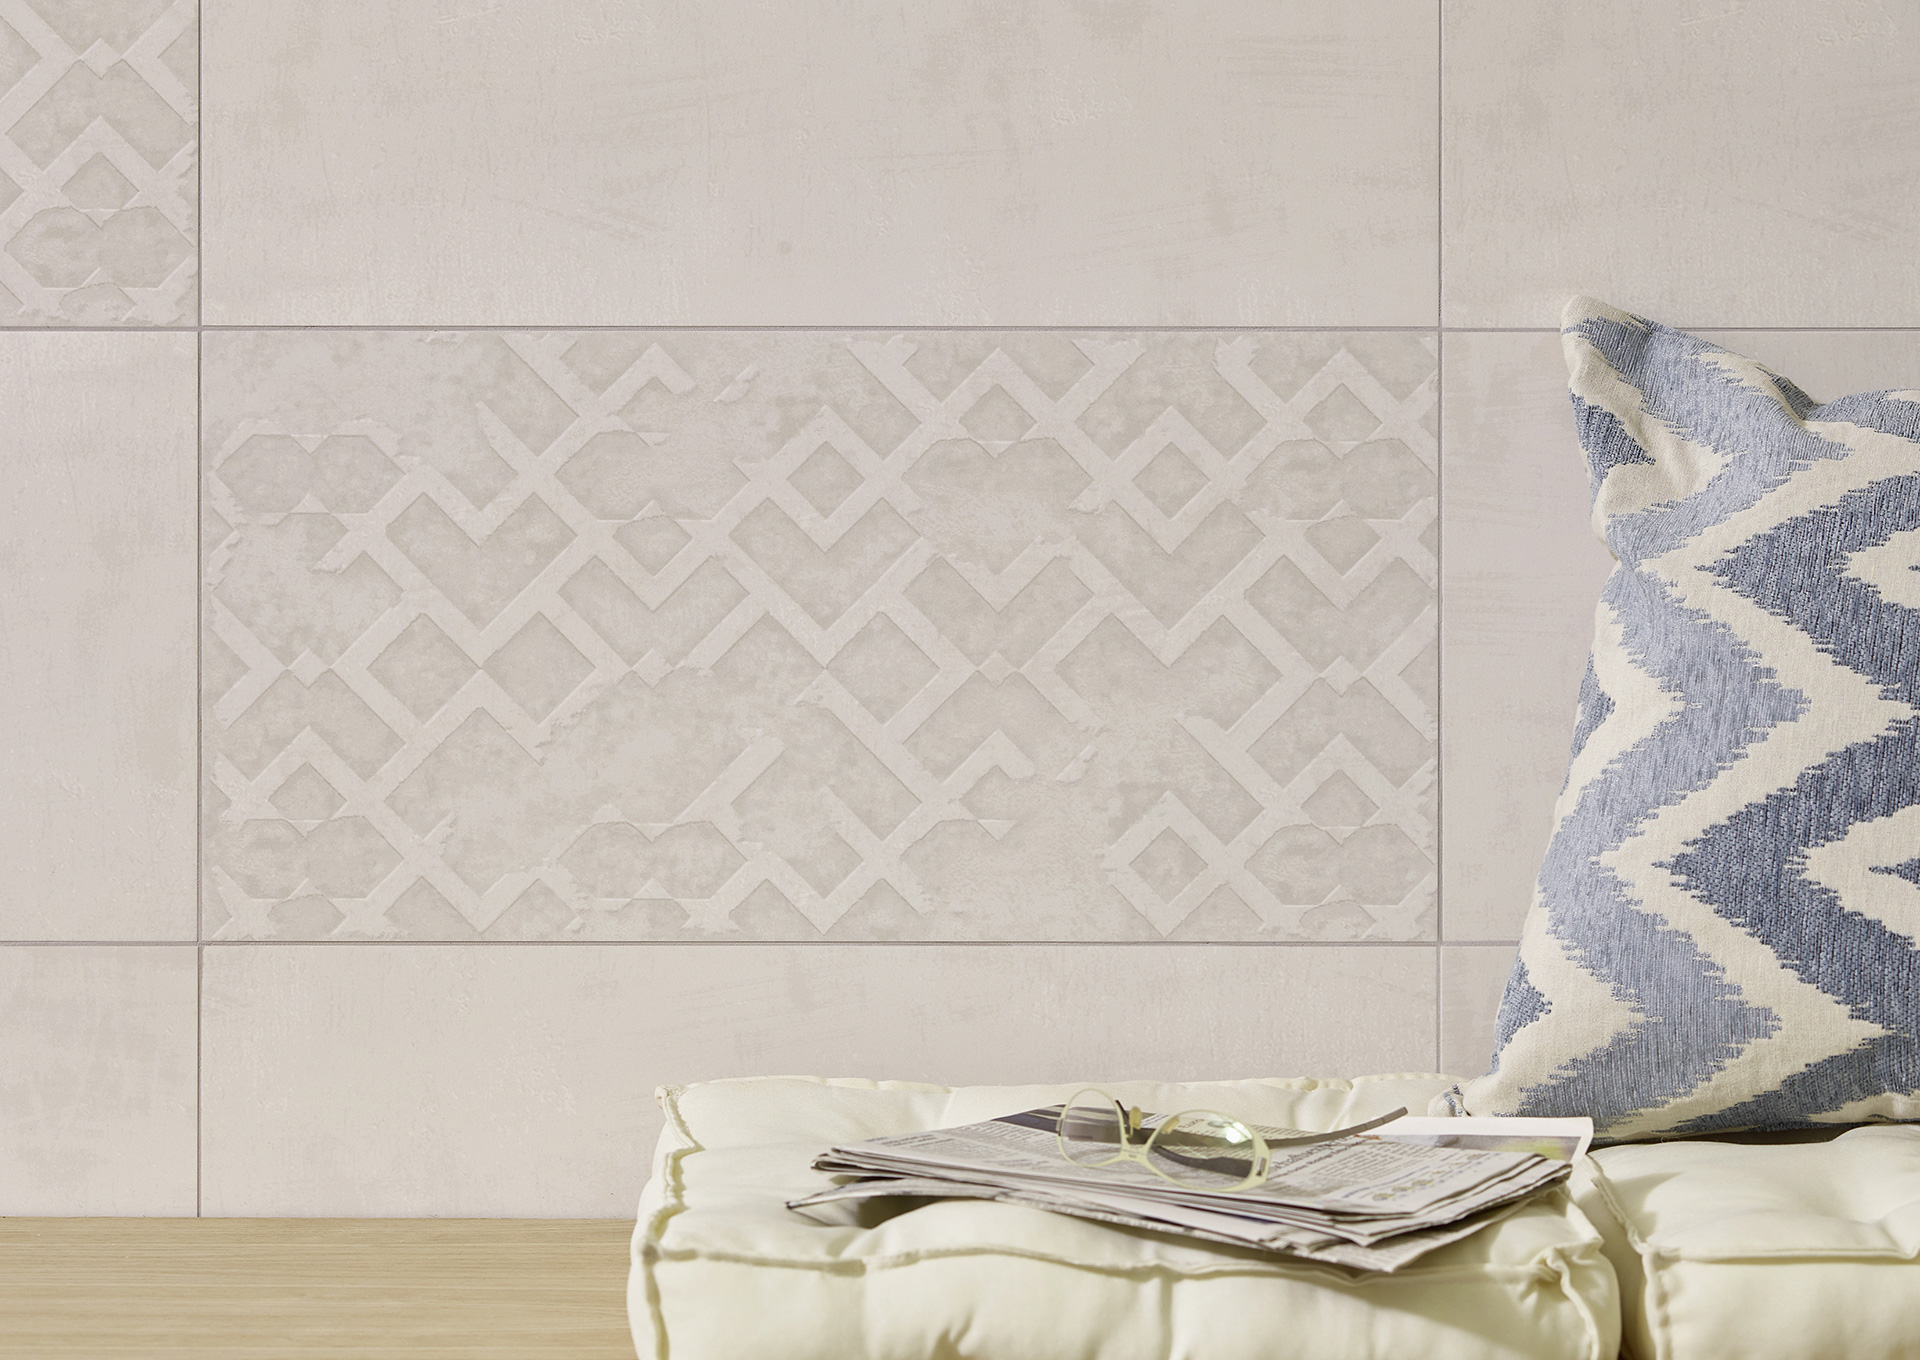 Altai grey antik, grey arabesque 30x60 wall tile, decor